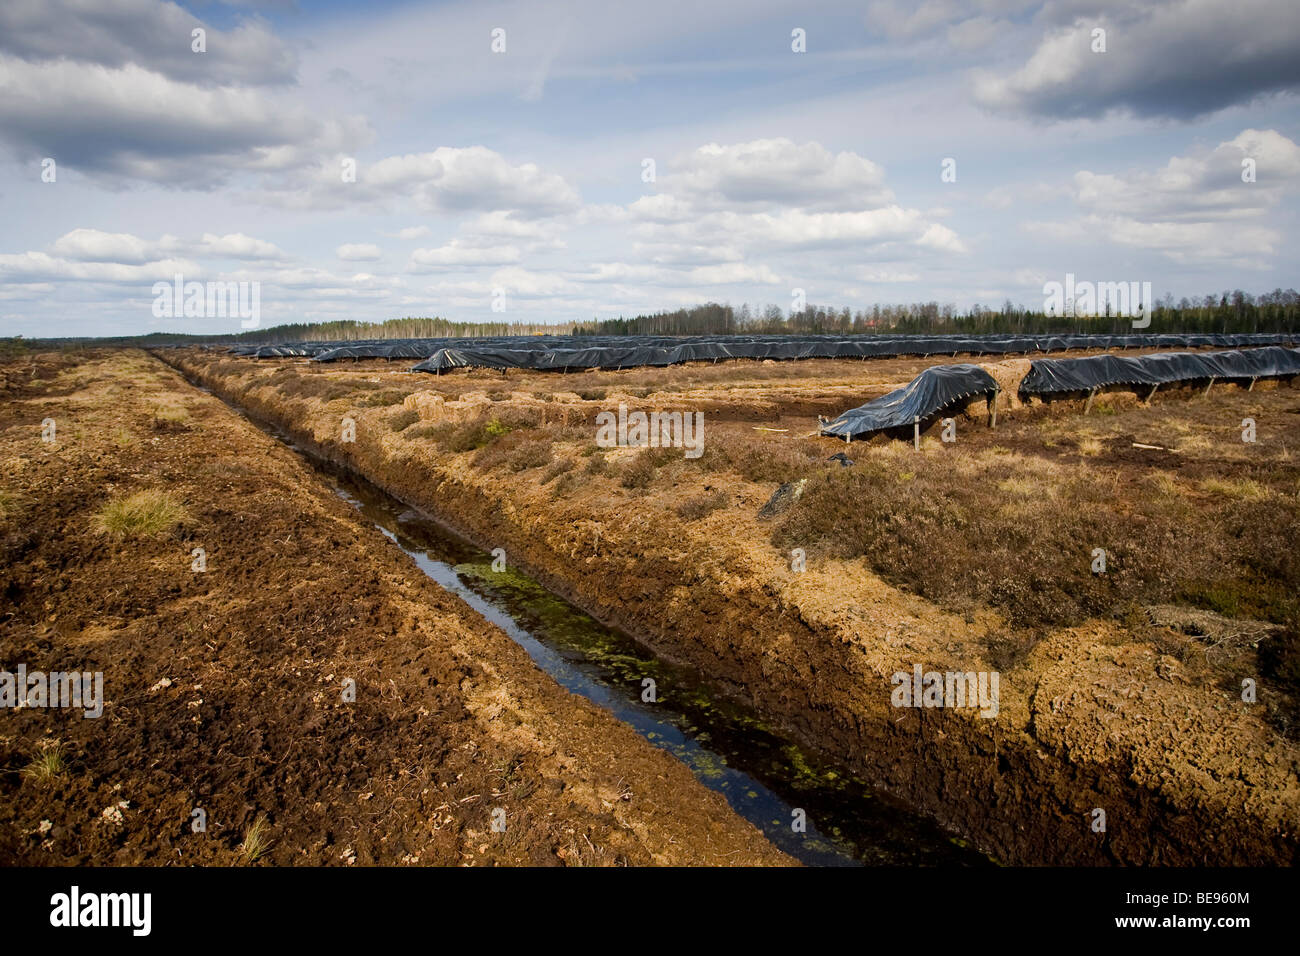 Destruction of virgin peatland in Sm land, Vernietiging van oorspronkelijk veen door grootschalige turfwinning in Sm land Stock Photo